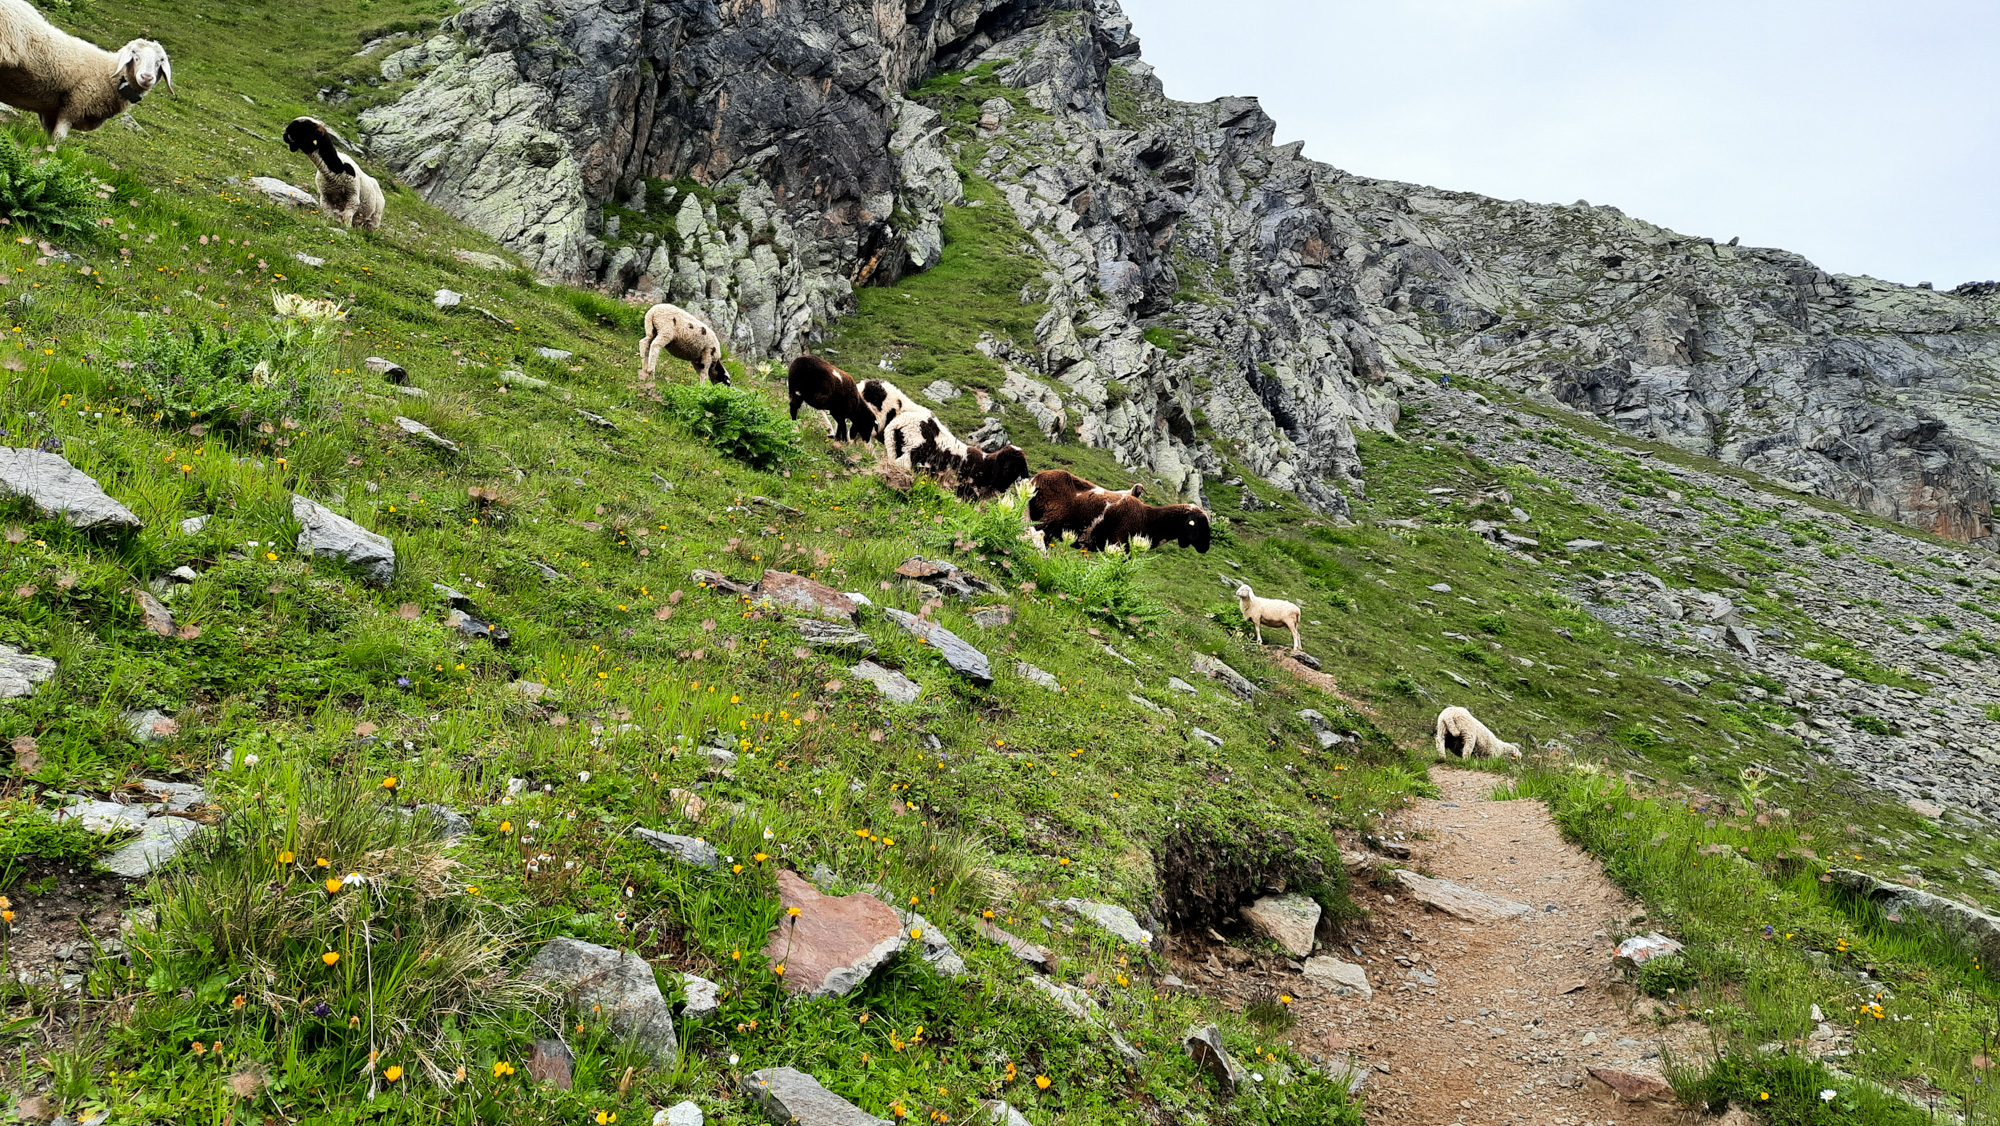 Cestu na vrchol môže skrížiť napríklad stádo oviec.